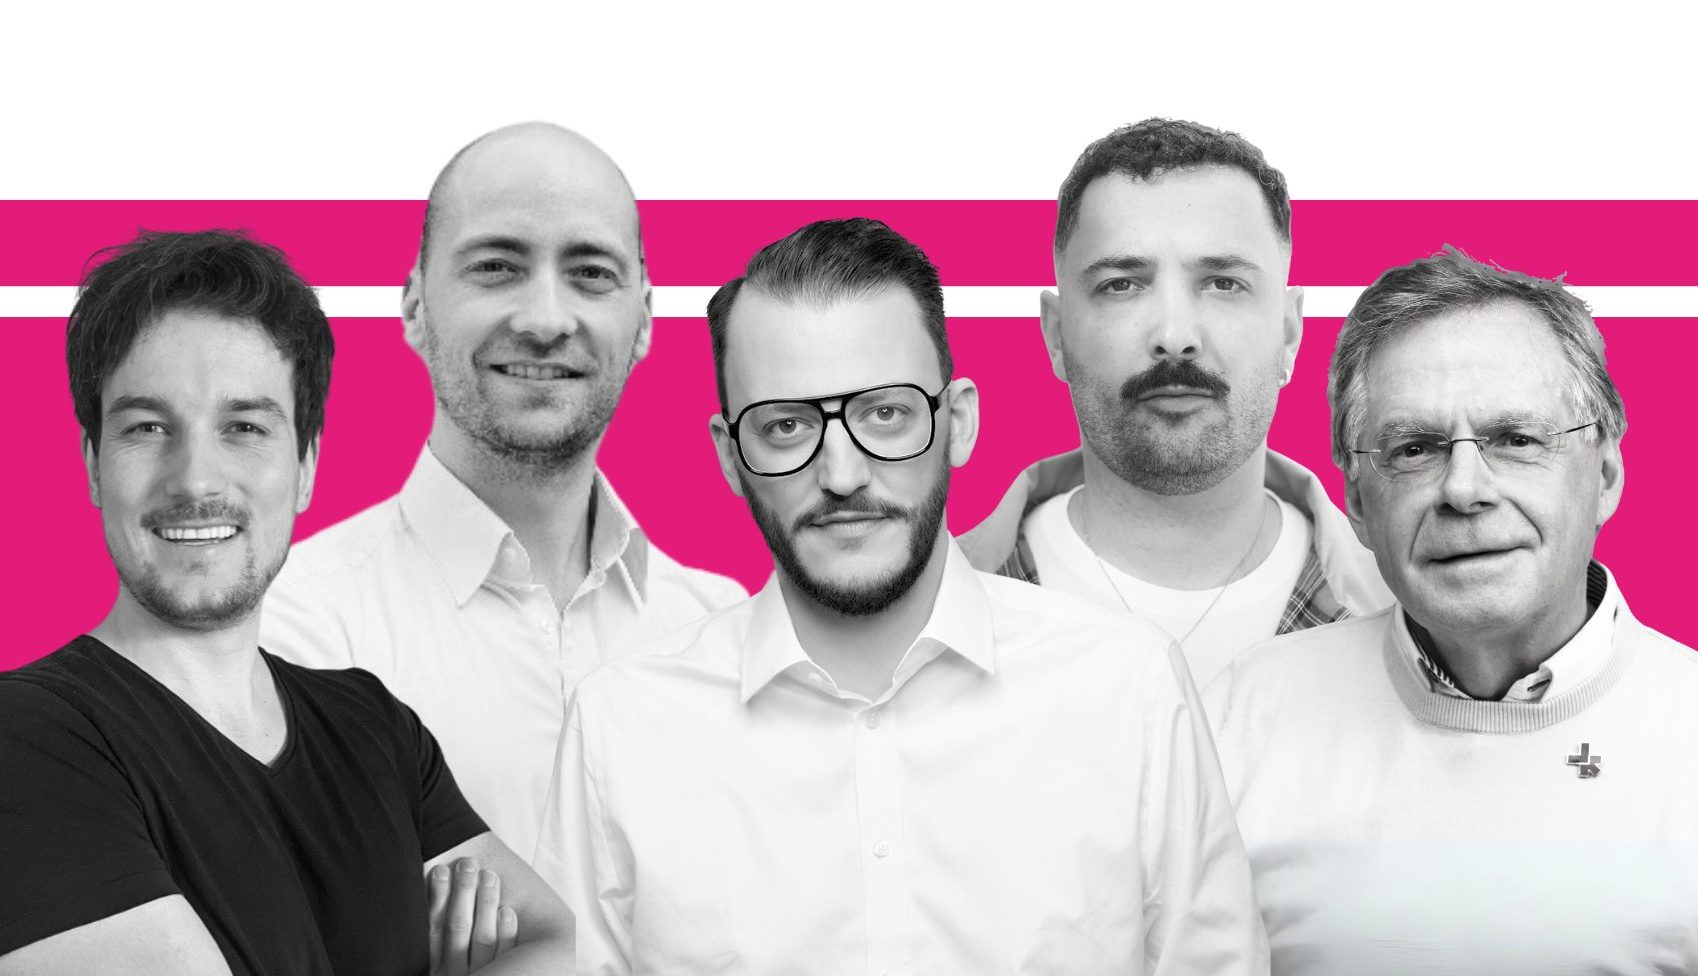 Gruppenbild der HeForShe Botschafter mit einem Magenta Hintergrund